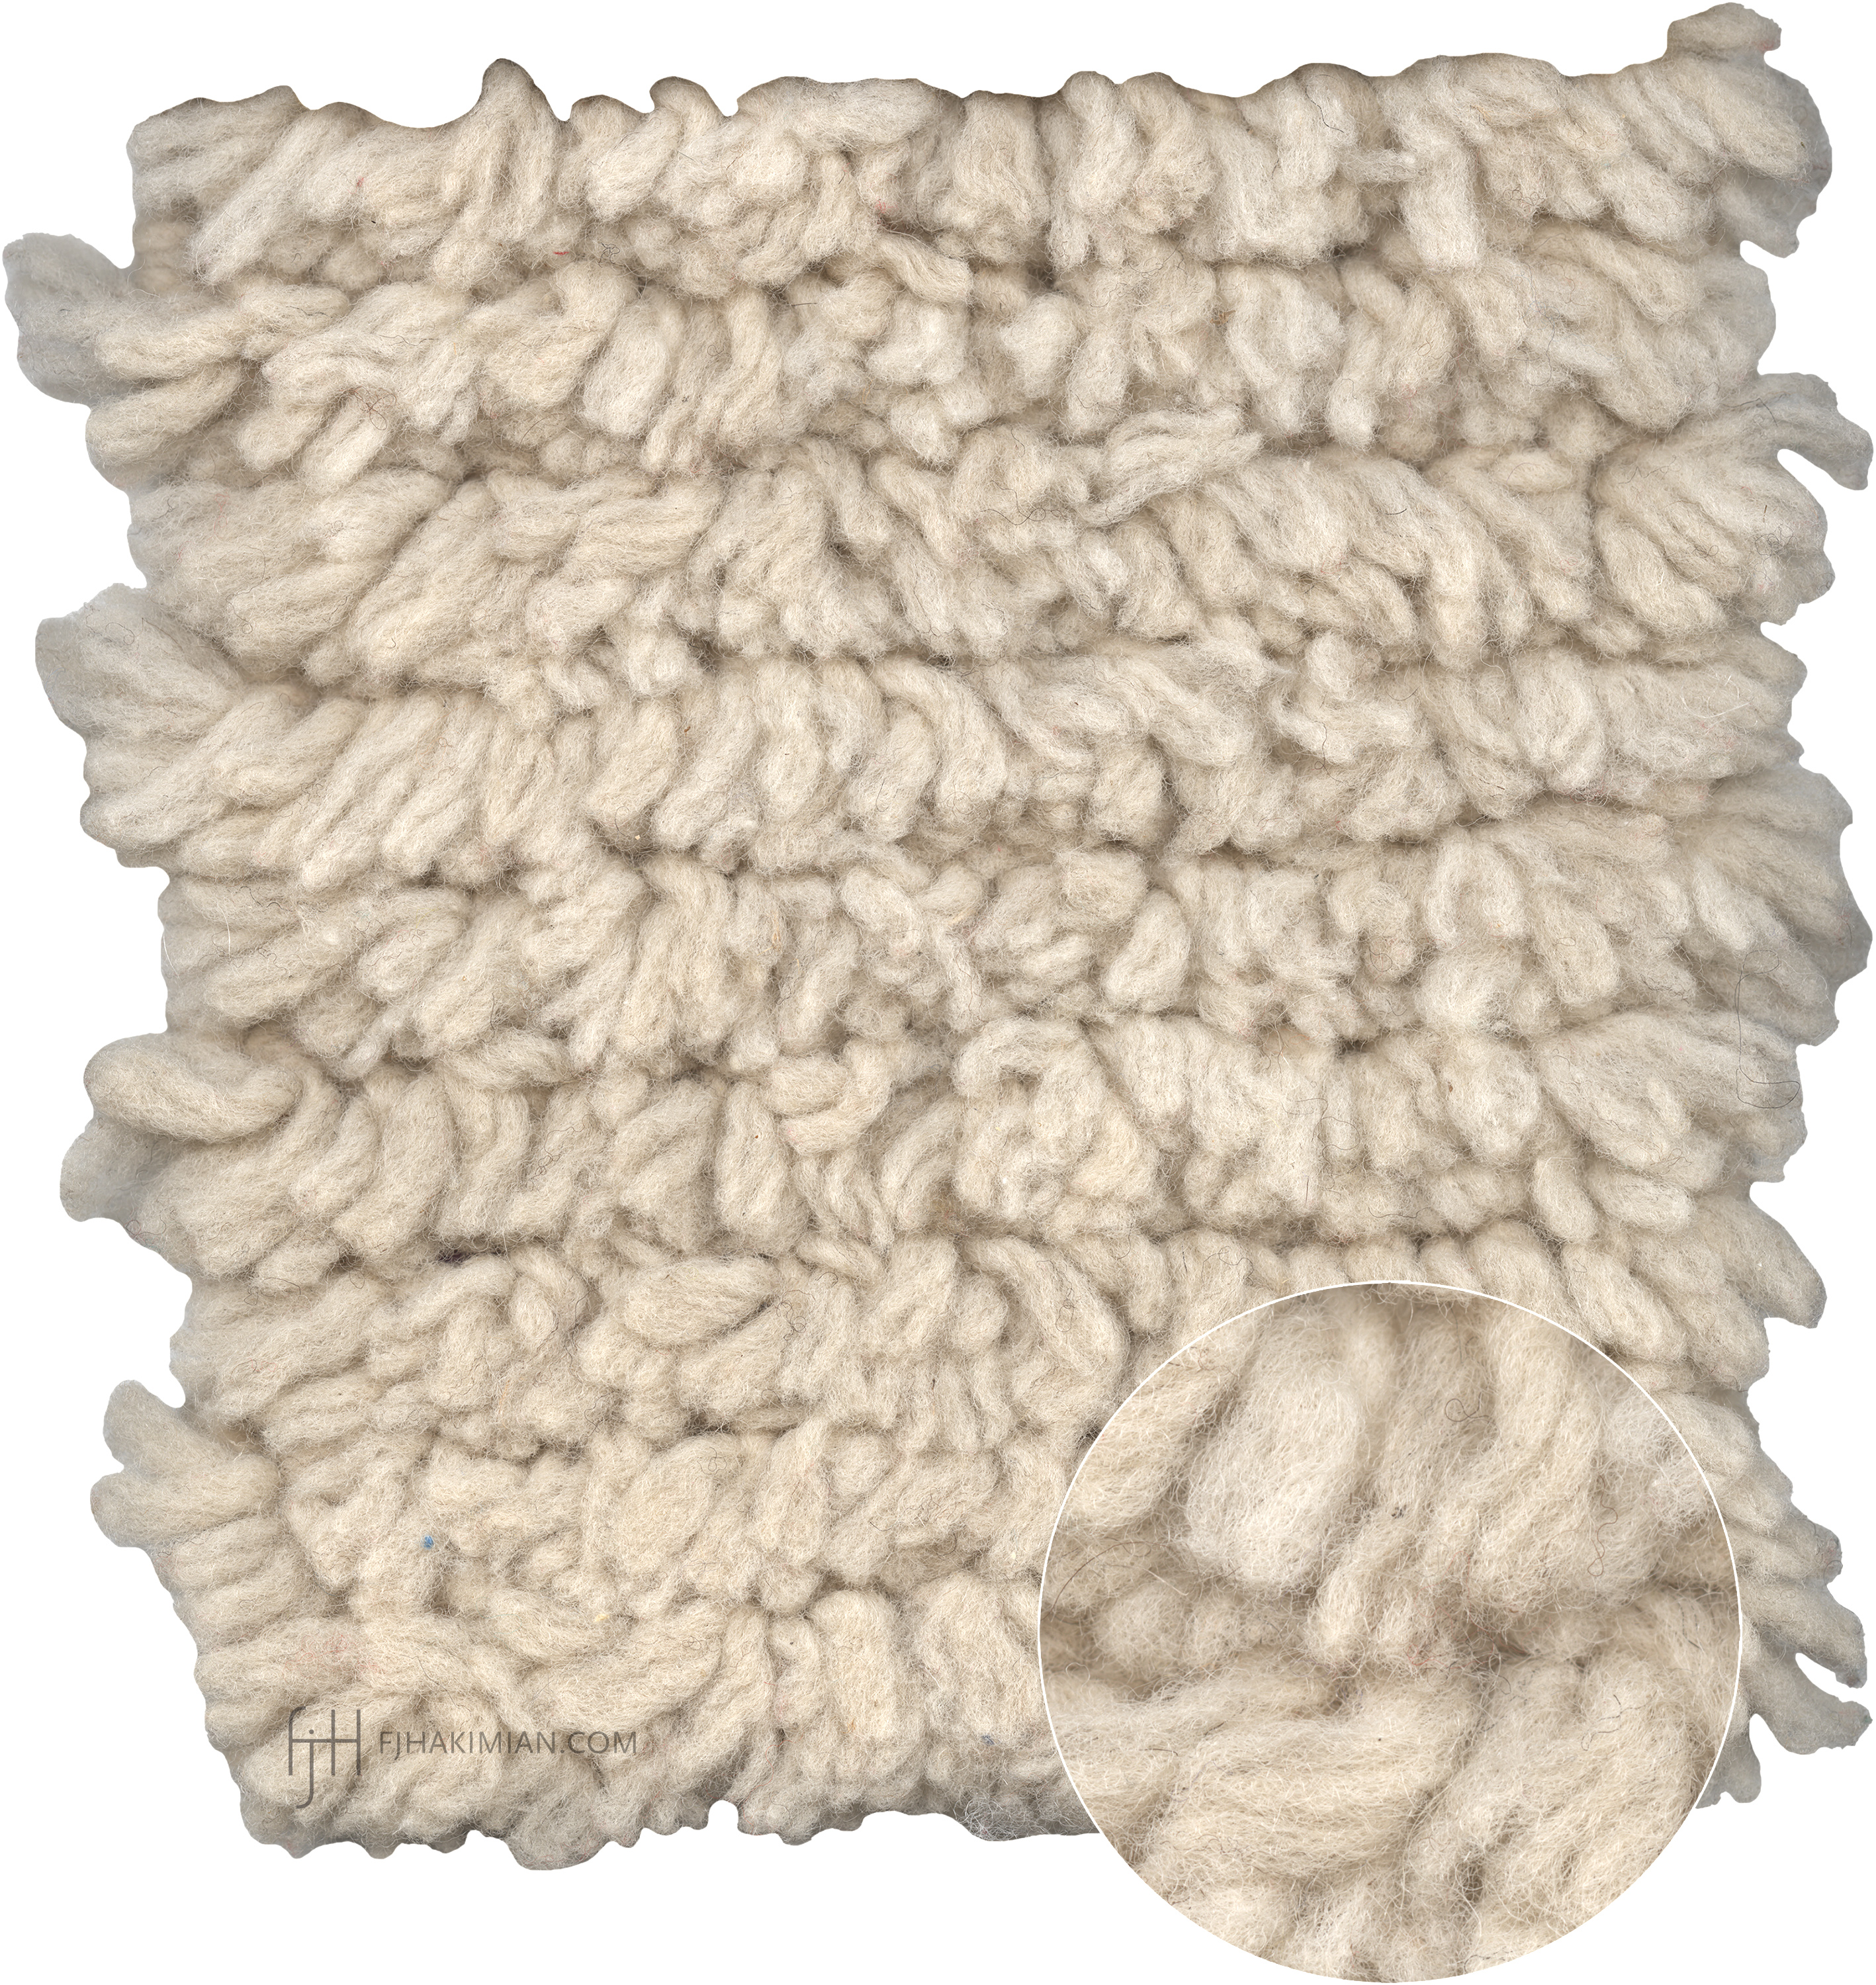 AN-Pladilla-Natural-Wool-fjhakimian